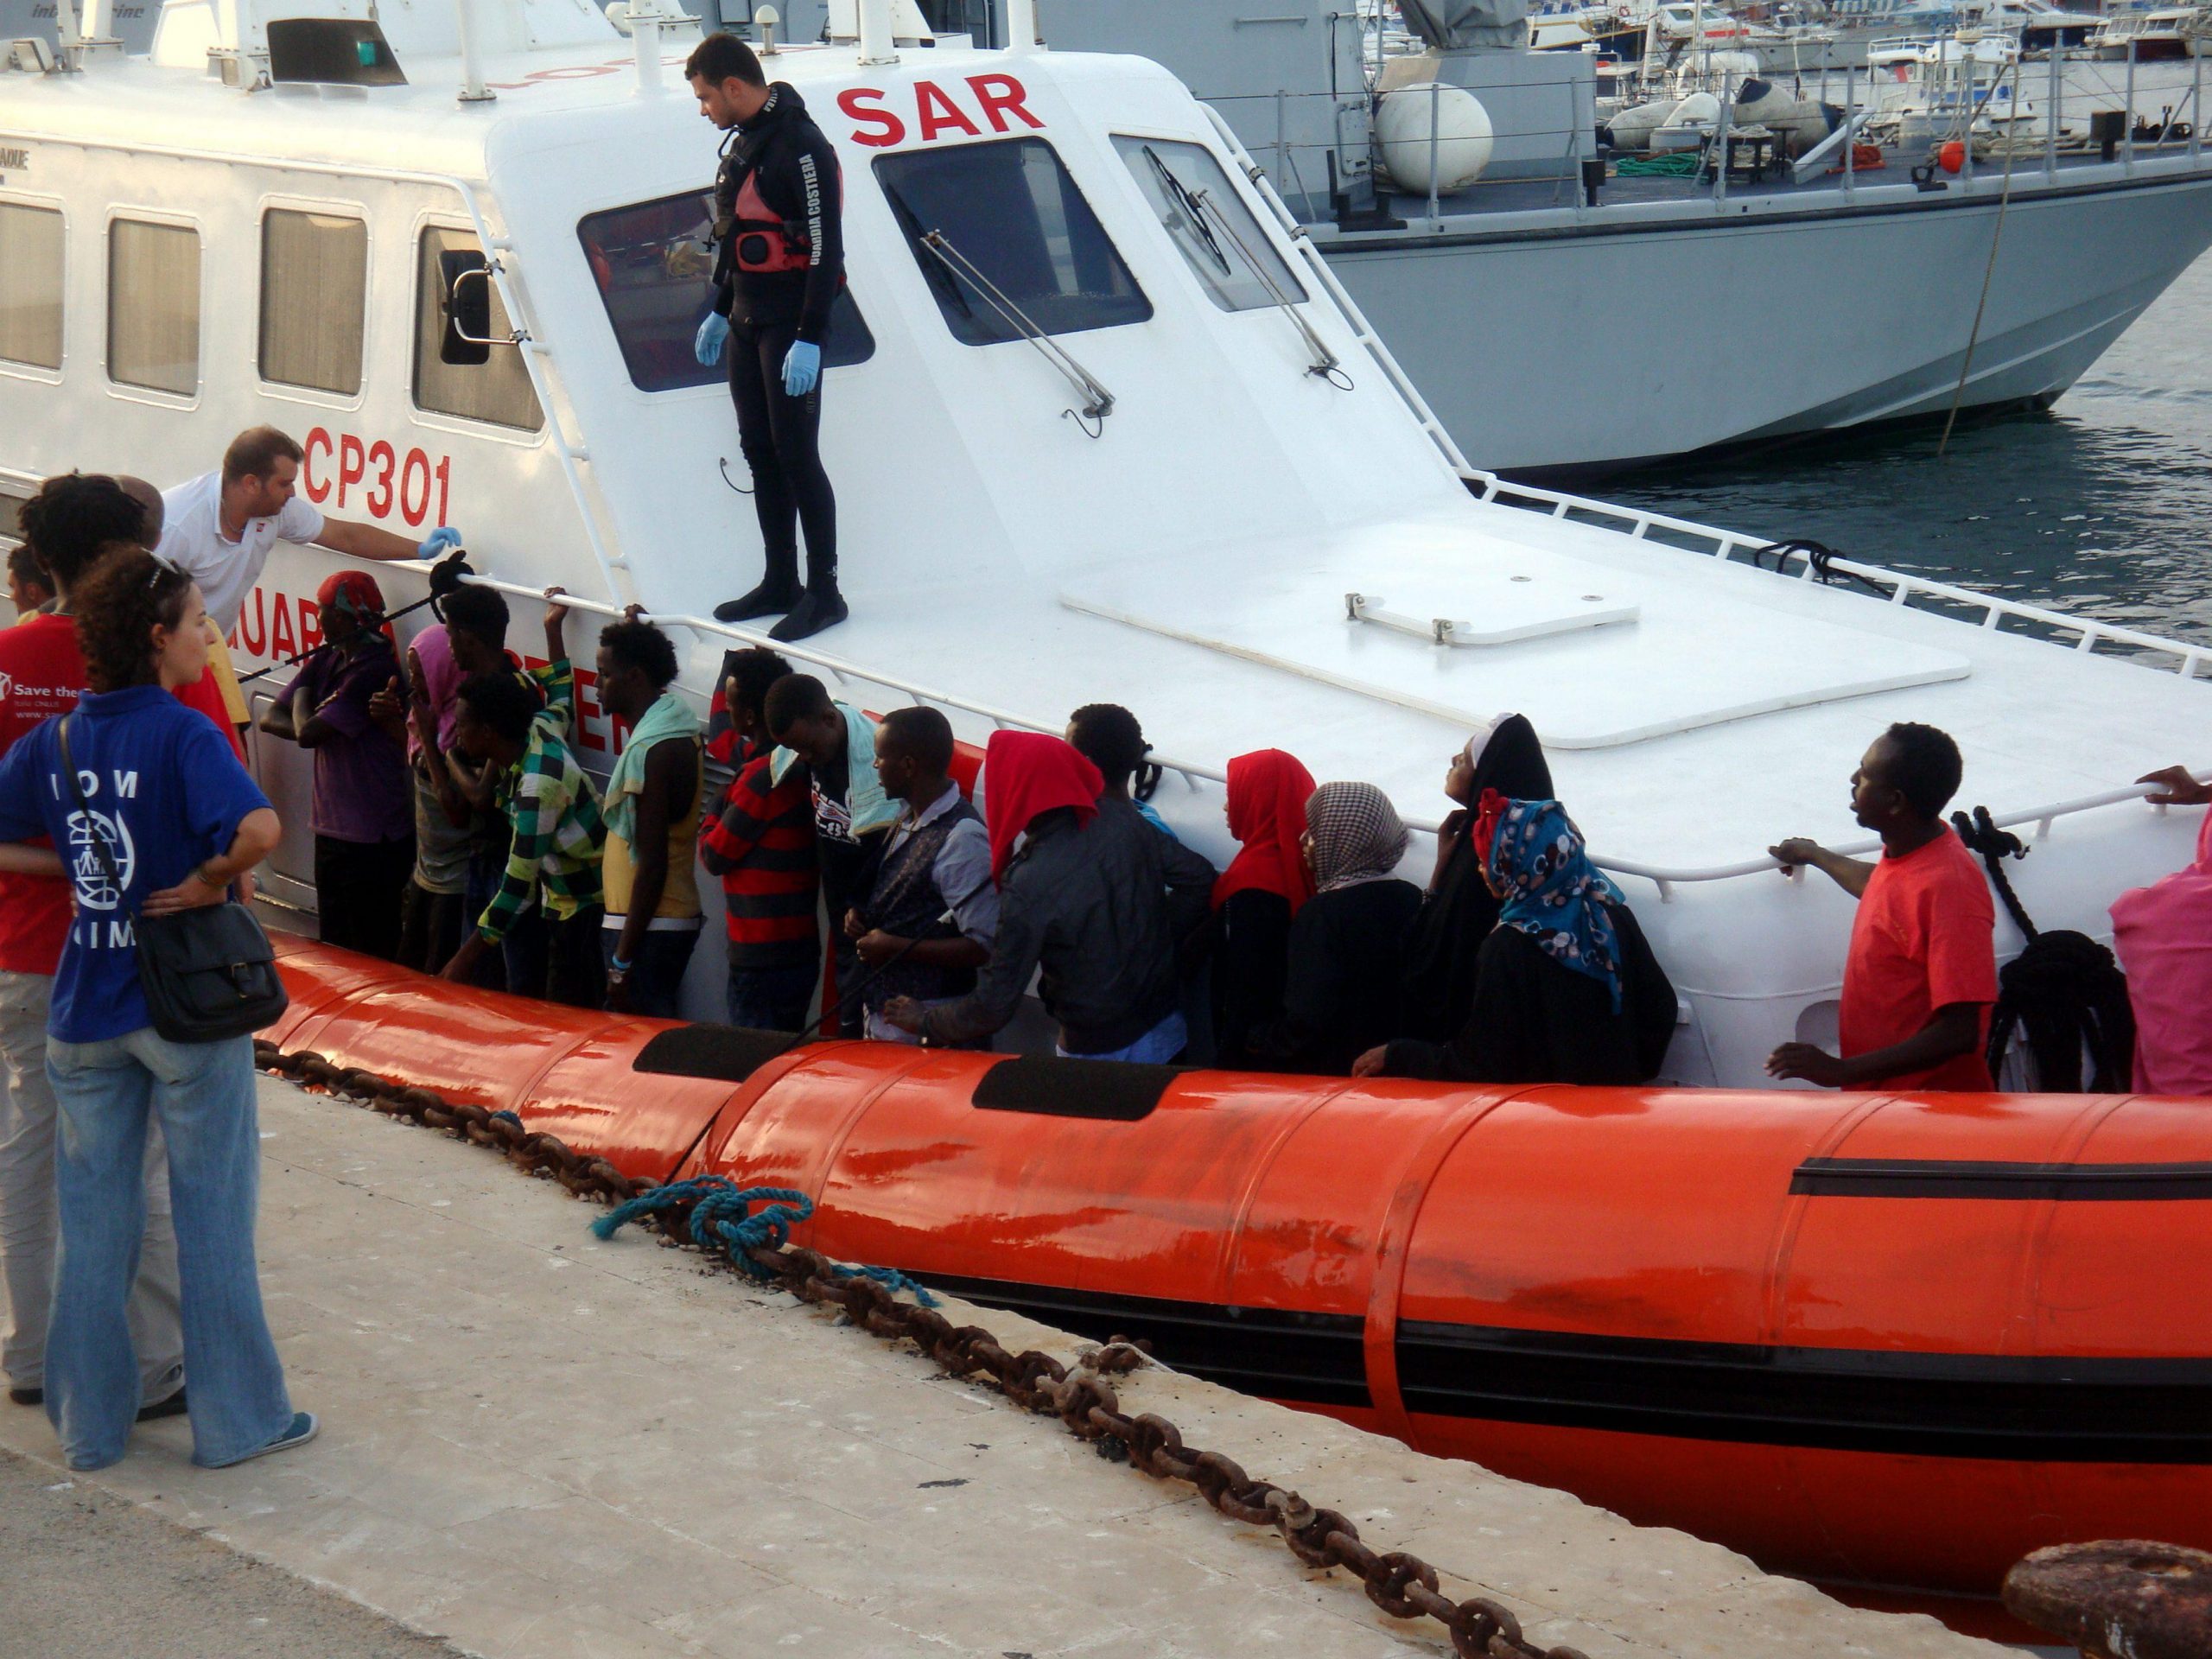 Tribunale: illegale lo sbarco di migranti selettivo